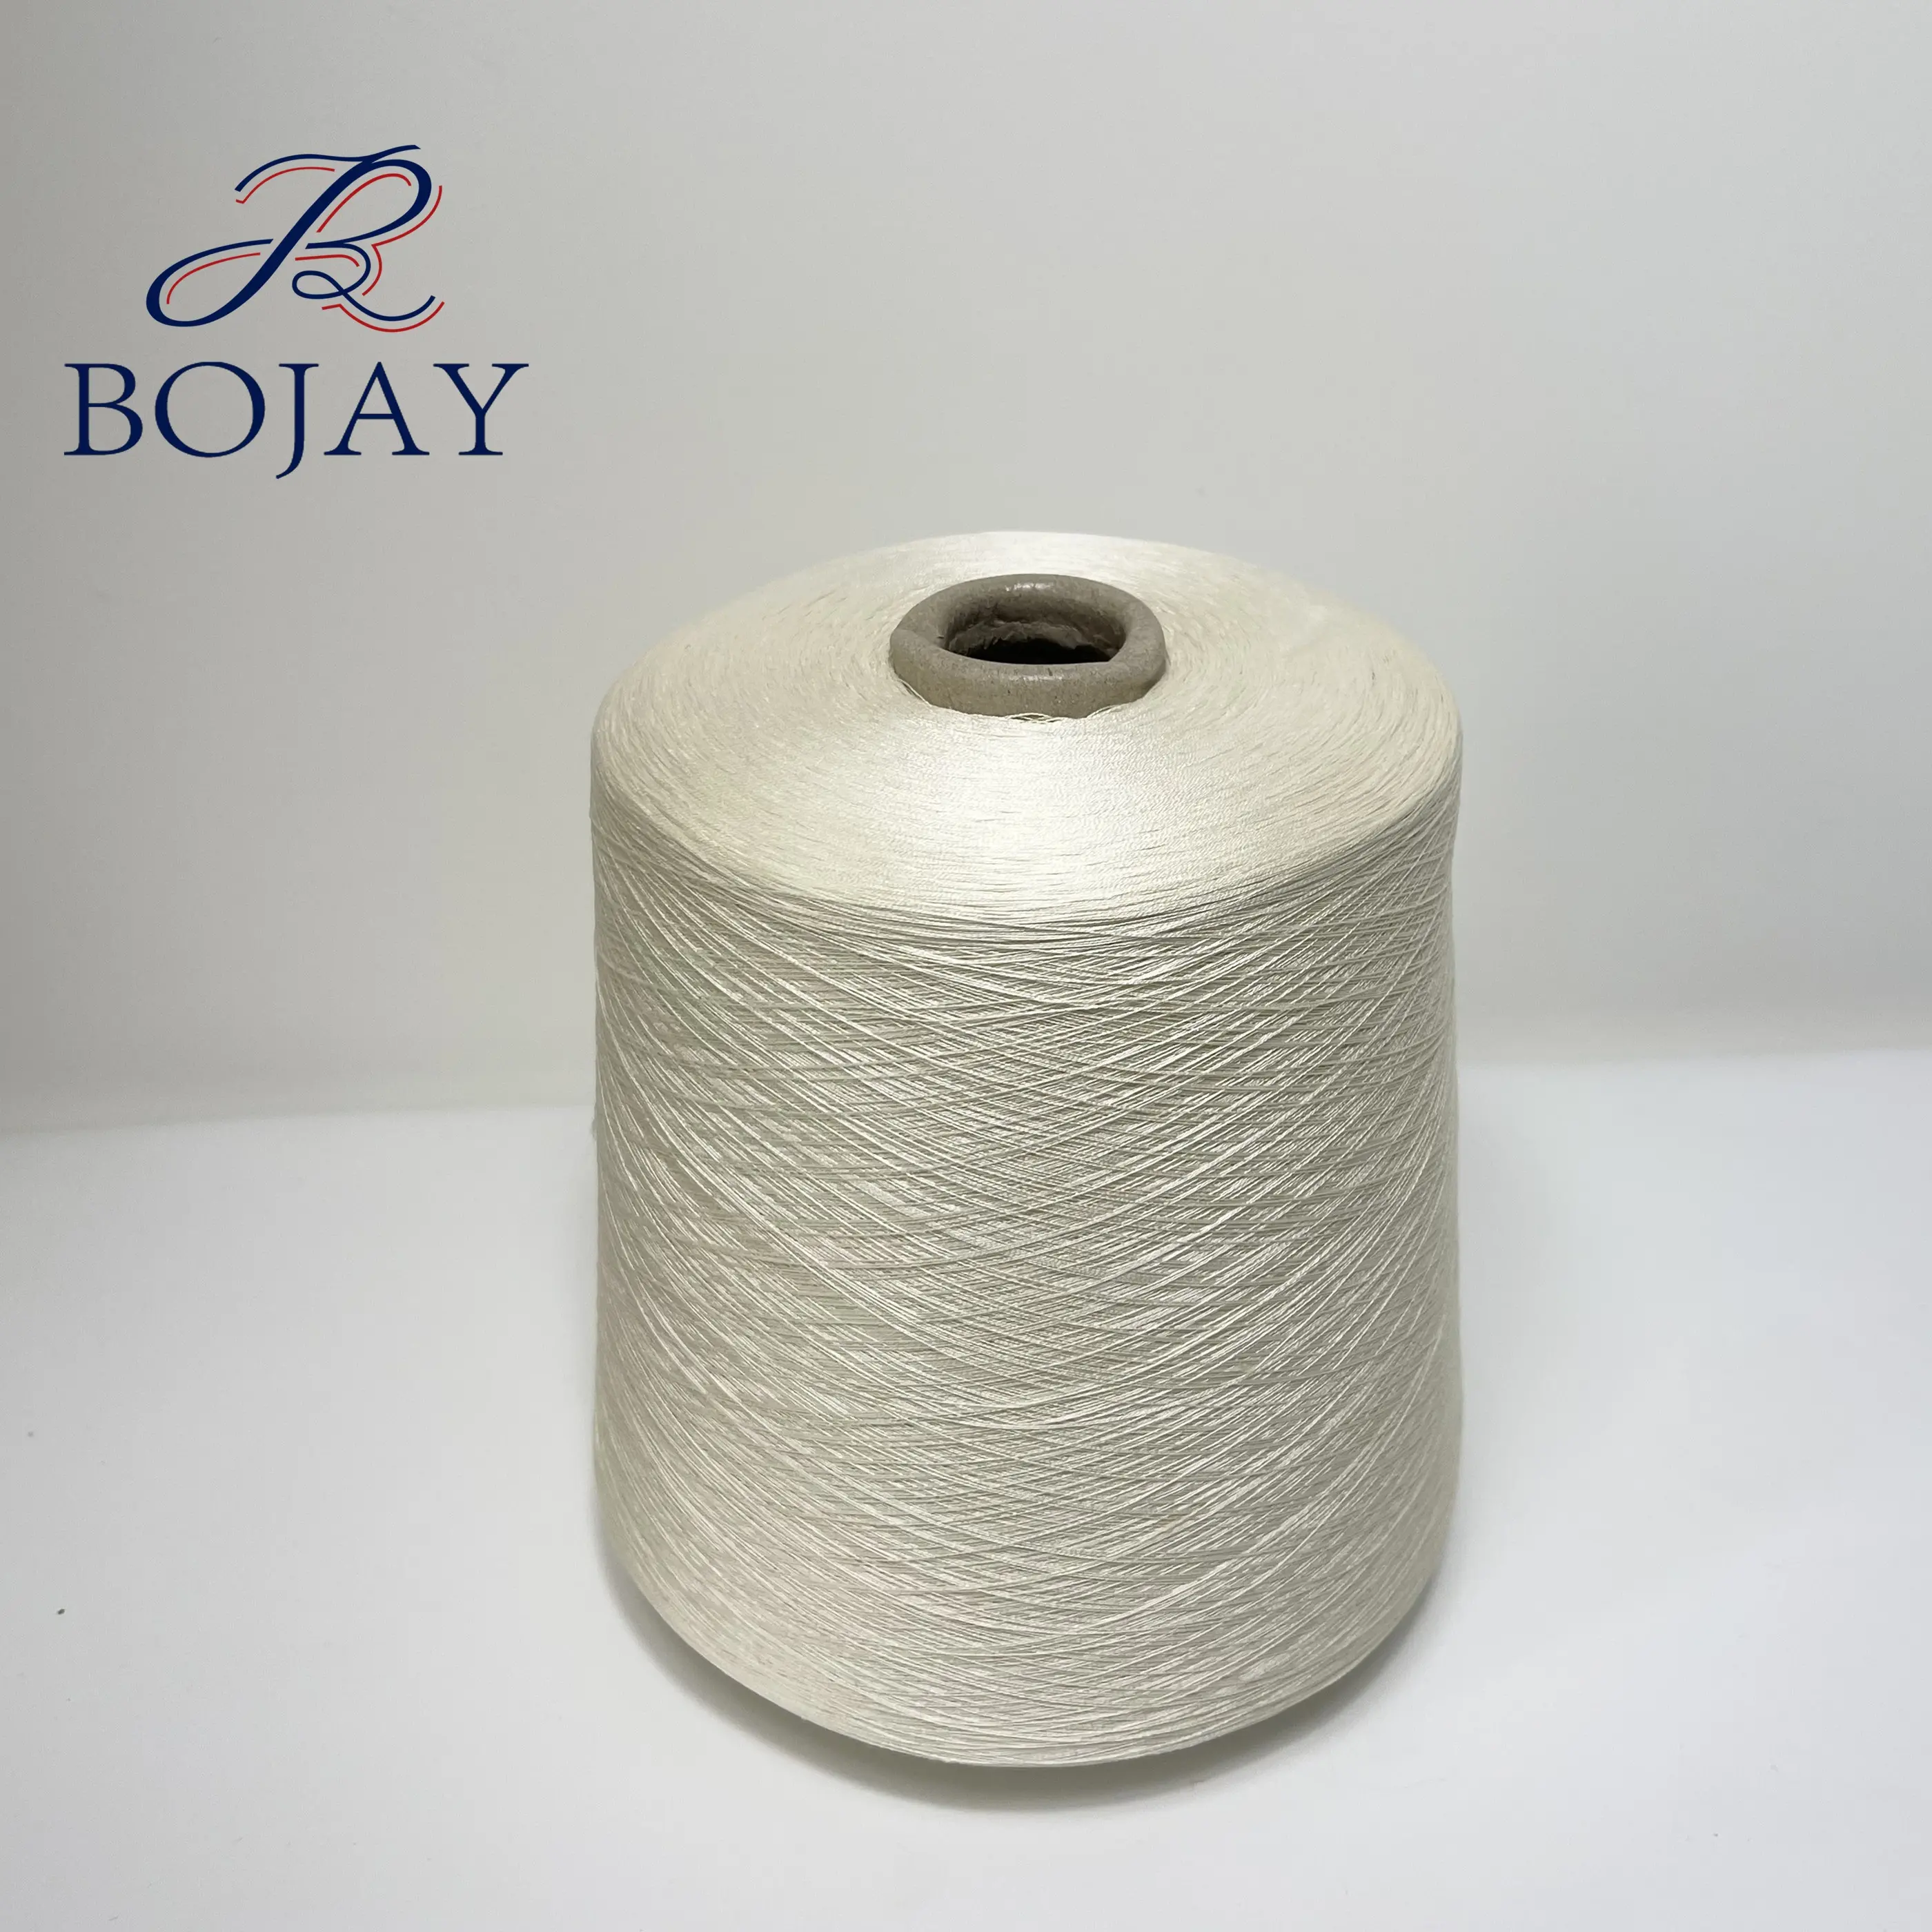 Bojay 100% kéo sợi tơ tằm cho thảm và quần áo, nm120/2 100% dâu kéo sợi tơ tằm